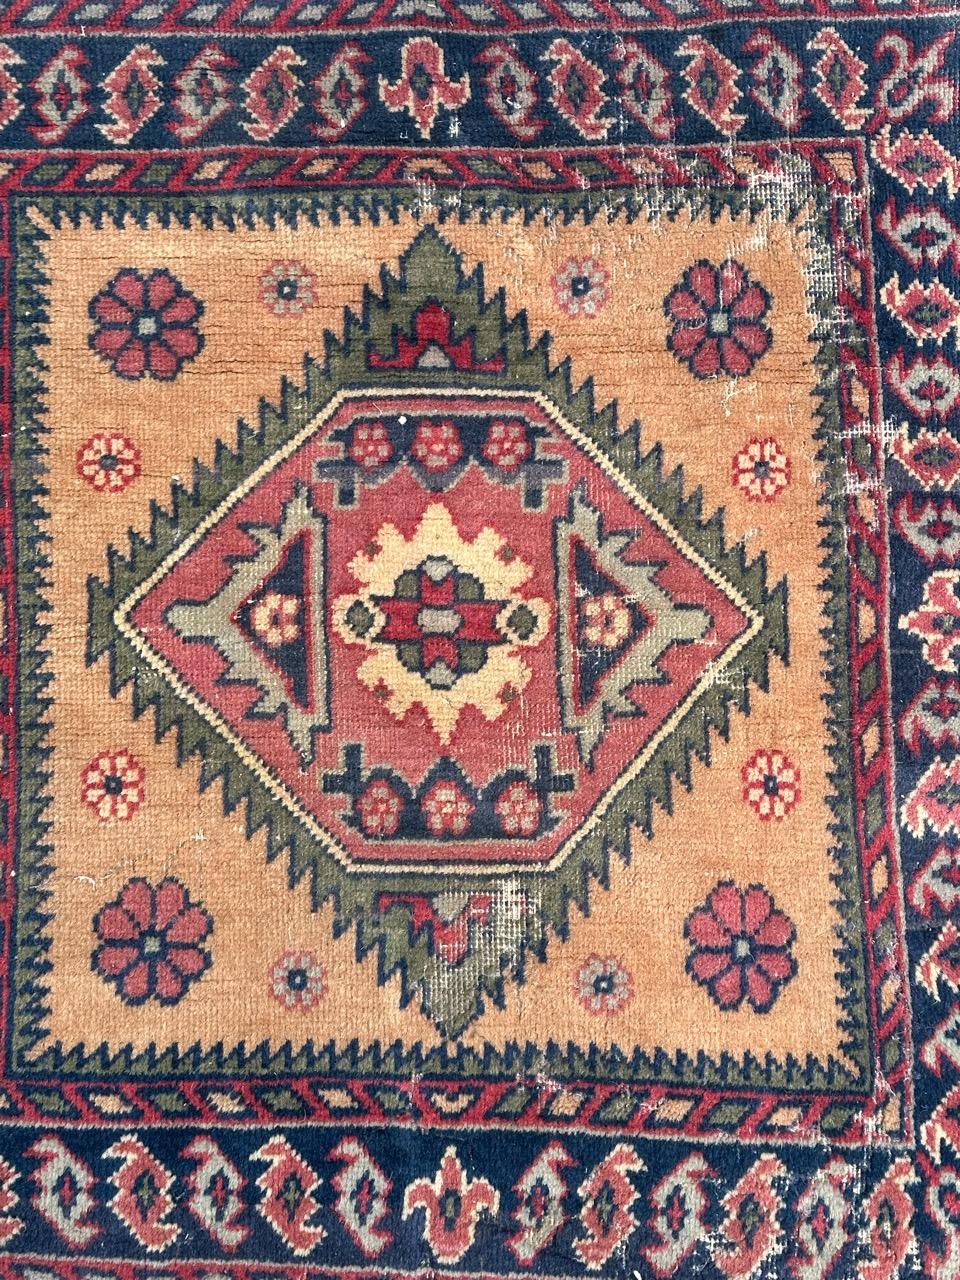 Schöner aserbaidschanischer Teppich aus der Mitte des Jahrhunderts mit schönem geometrischem Muster und schönen Farben mit Orange, Lila, Grün, Rosa, Himmelblau und Marineblau, komplett und fein handgeknüpft mit Wolle auf Baumwollbasis 
Geringe